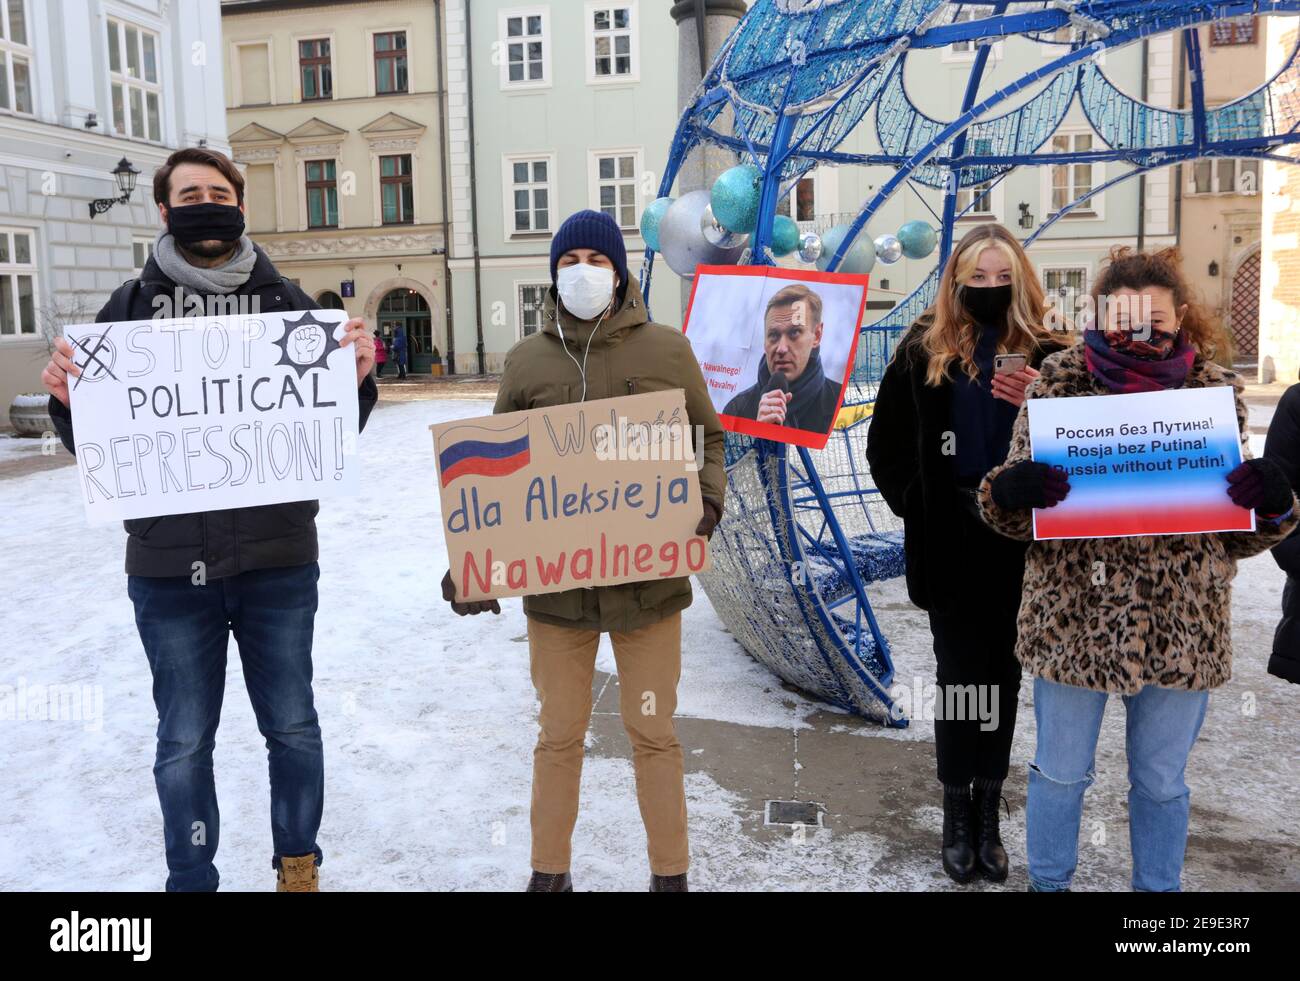 Cracovie. Cracovie. Pologne. Les Russes vivant en Pologne et leurs amis polonais lors d'un rassemblement politique en faveur du leader de l'opposition Alexei Navalny en Cr Banque D'Images